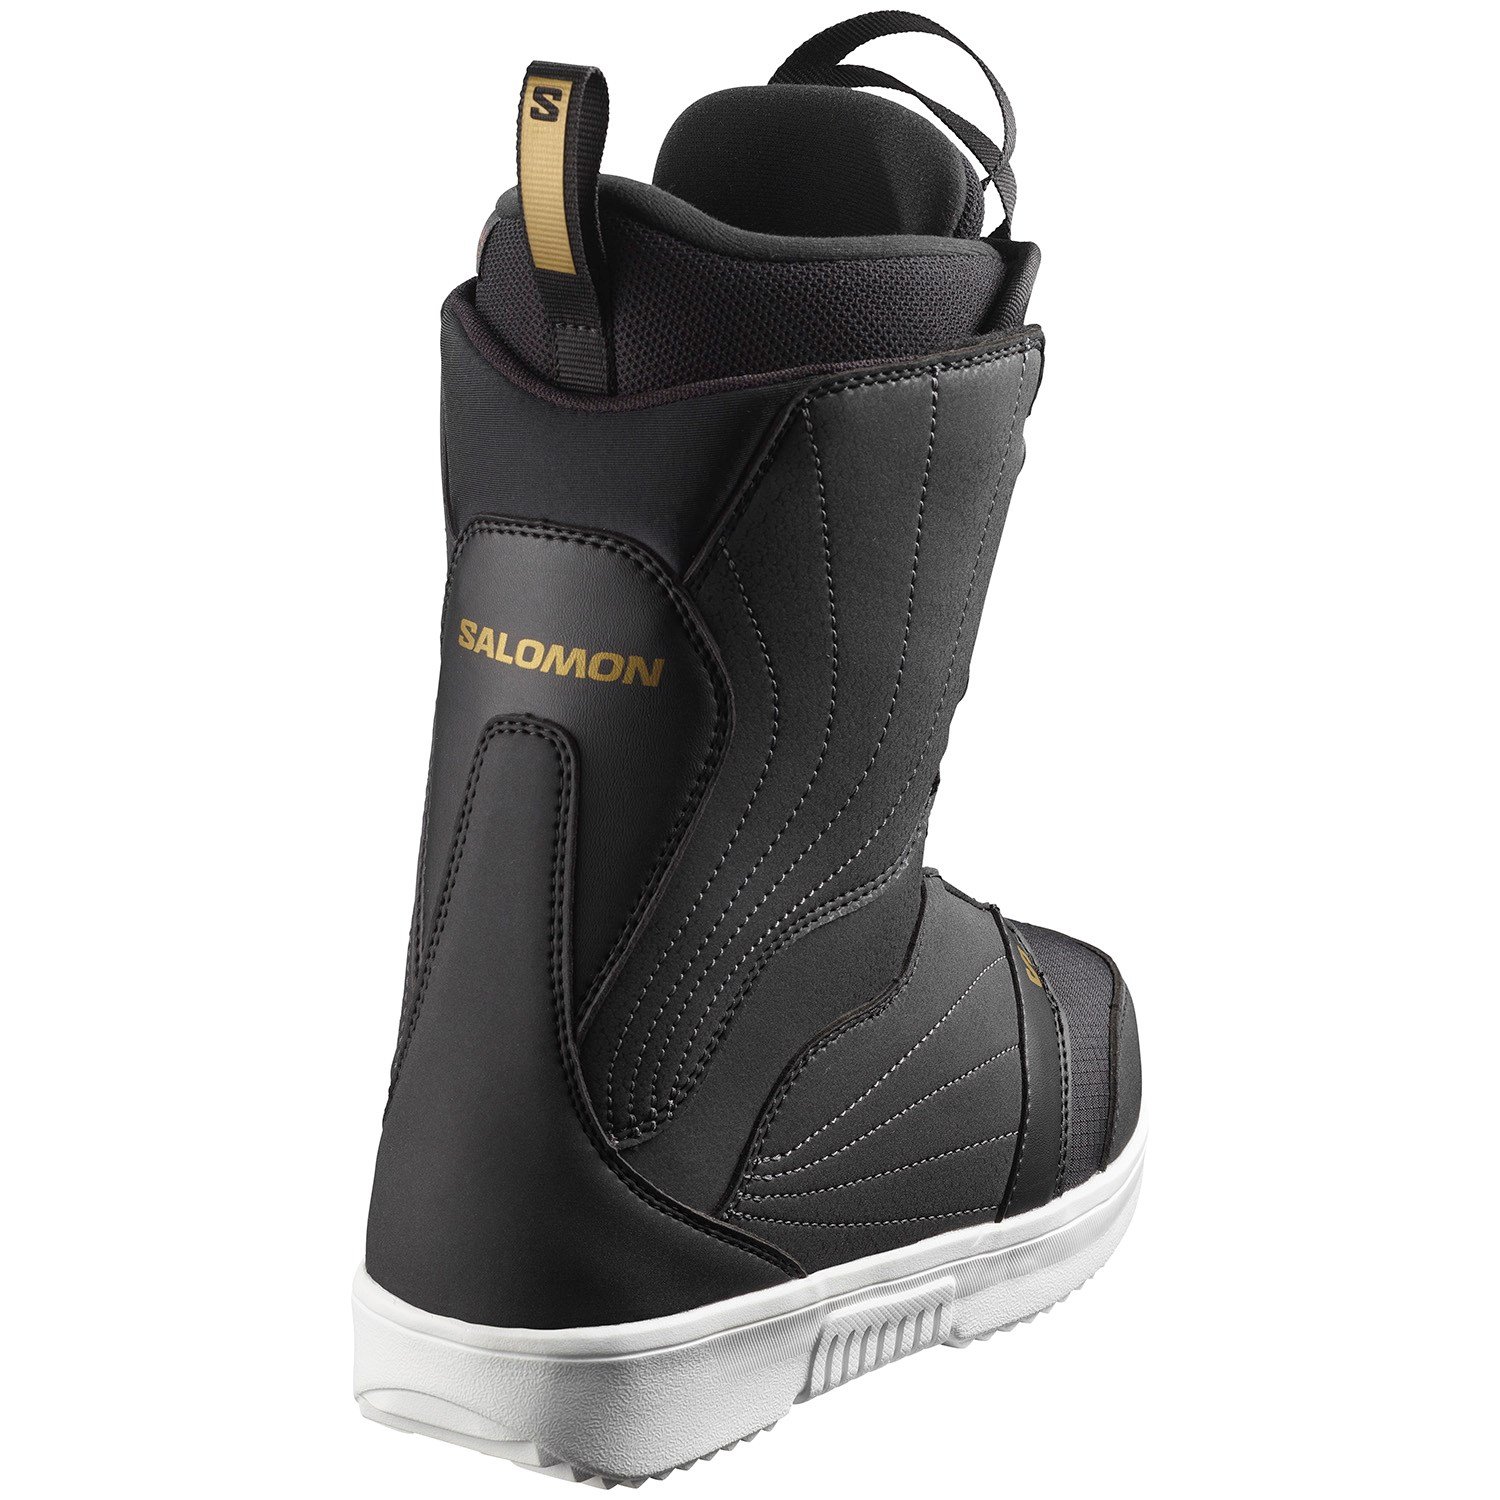 Salomon Pearl Boa Snowboard Boots - Women's | evo